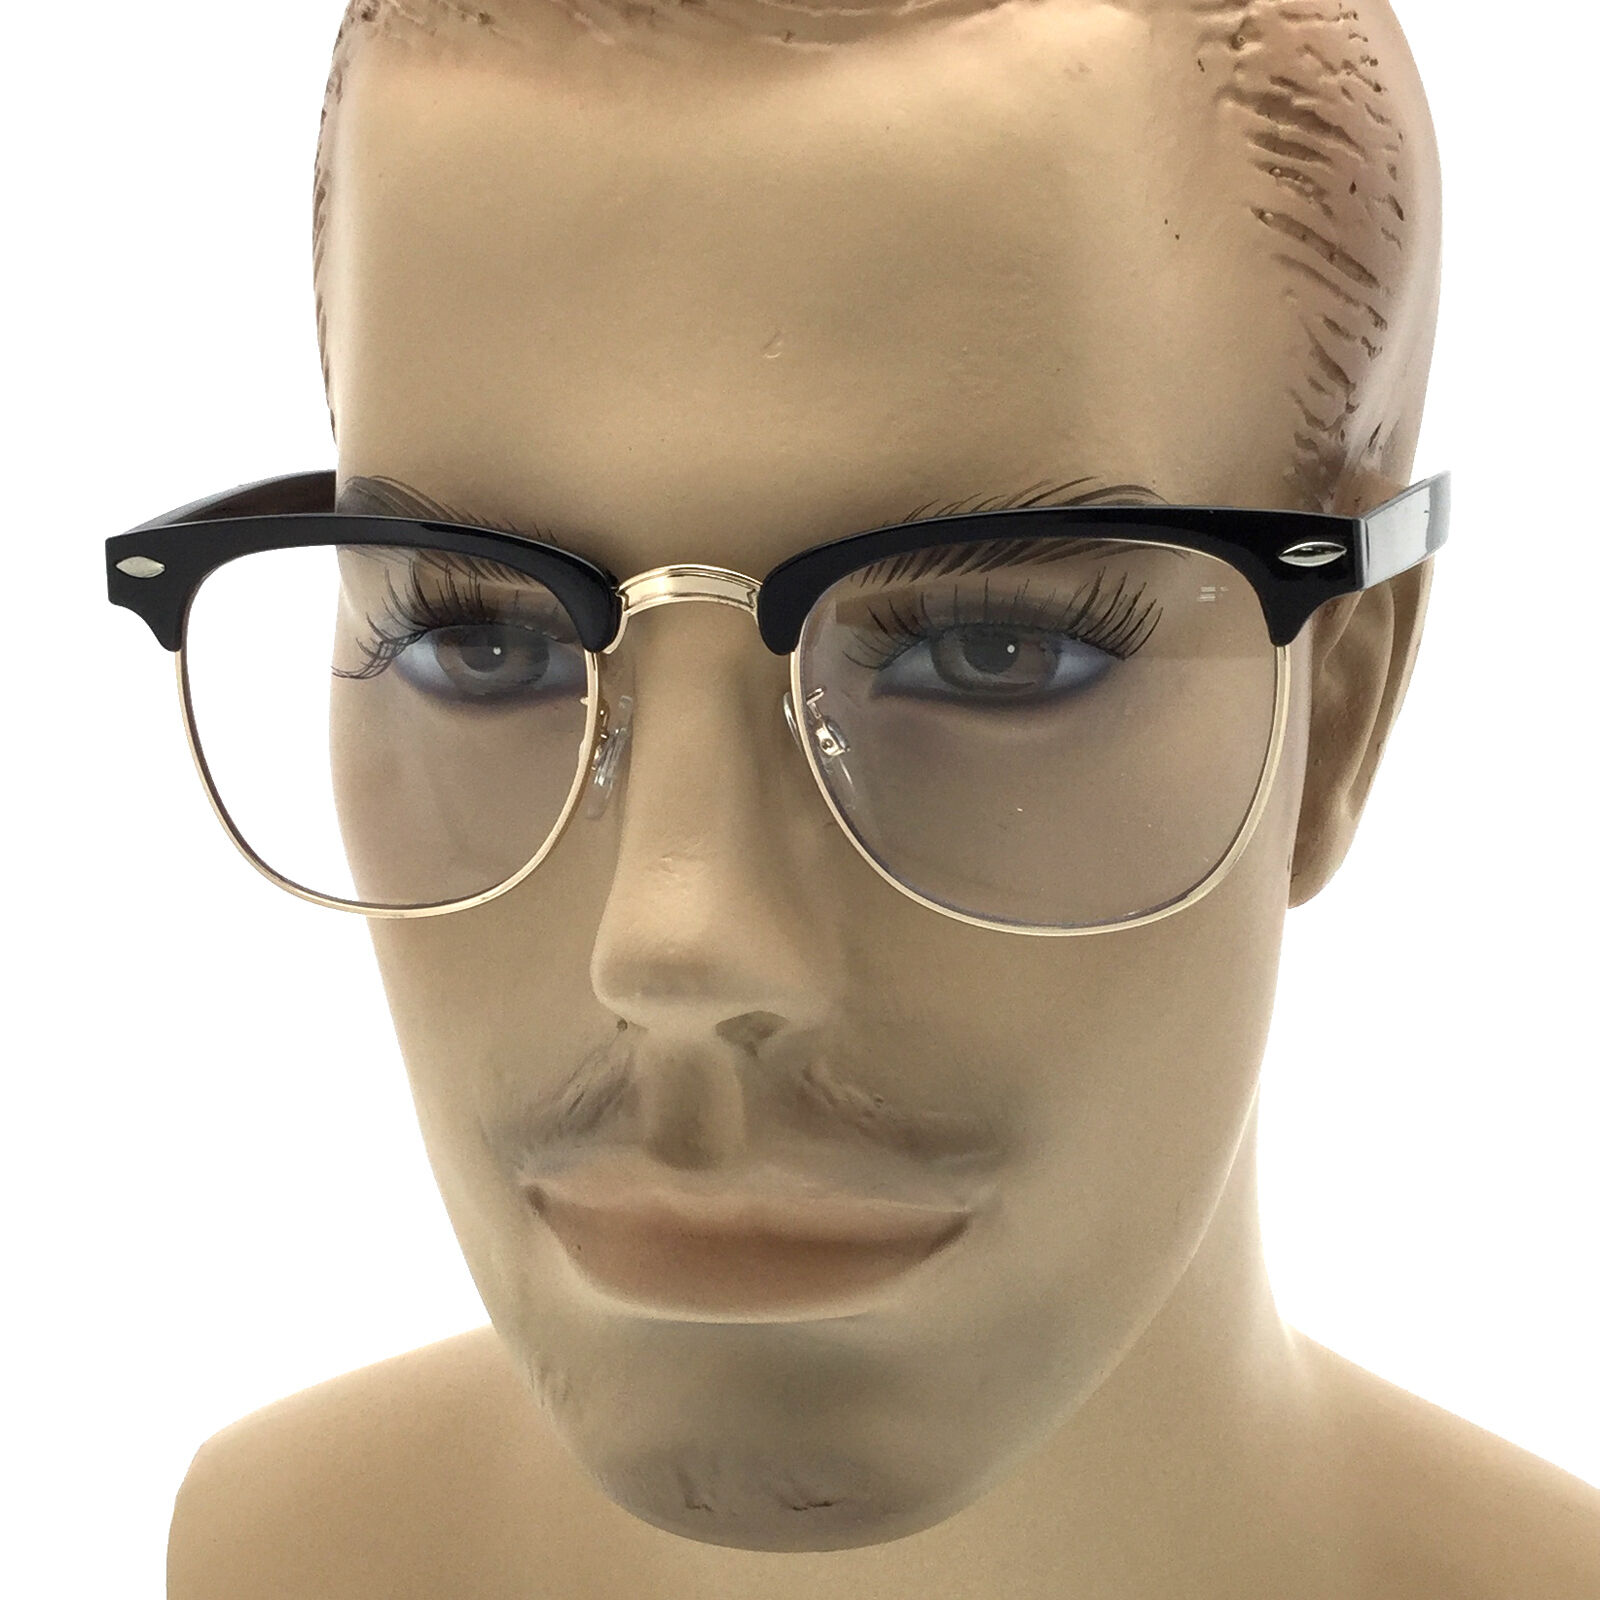 Оправа для очков мужская спб. Прозрачные очки мужские. Прозрачные очки для зрения мужские. Стильные прозрачные очки мужские. Модные мужские очки.